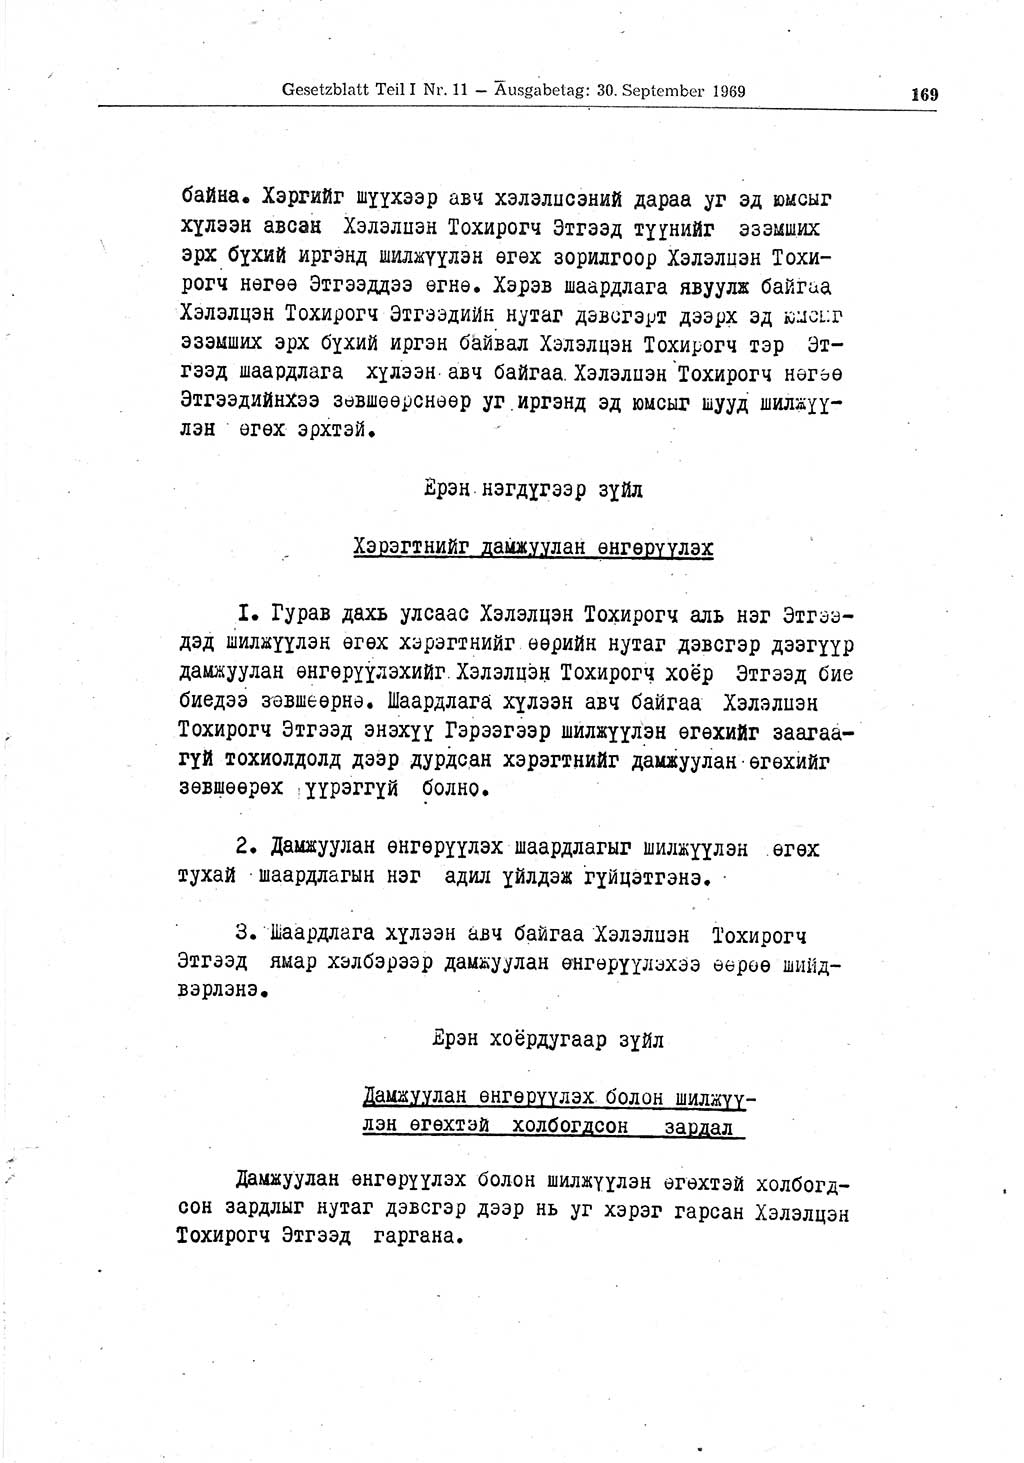 Gesetzblatt (GBl.) der Deutschen Demokratischen Republik (DDR) Teil Ⅰ 1969, Seite 169 (GBl. DDR Ⅰ 1969, S. 169)